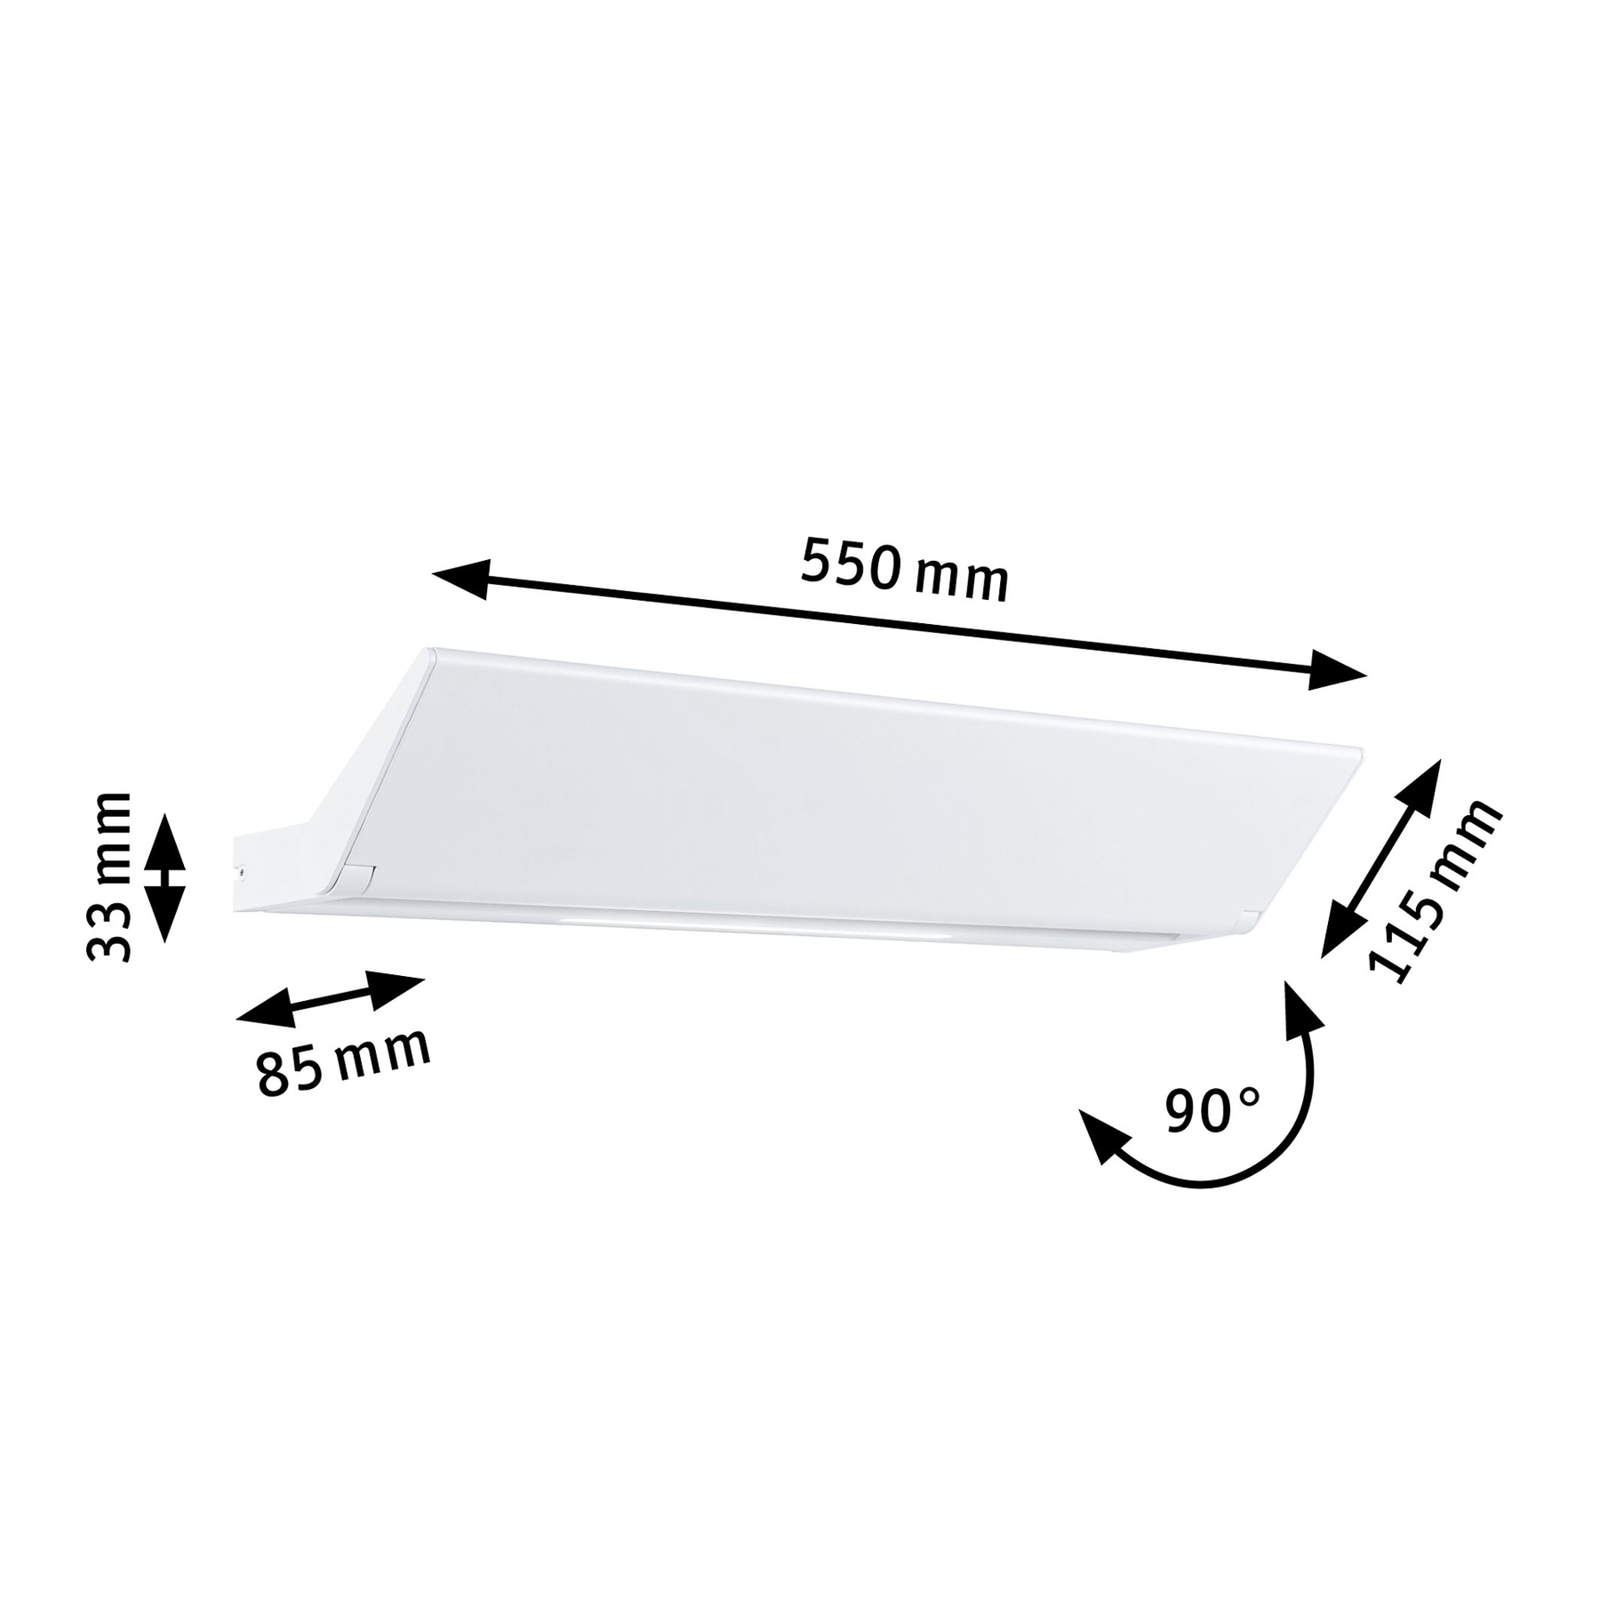 Paulmann Ranva wall uplighter 3-Step-dim, white